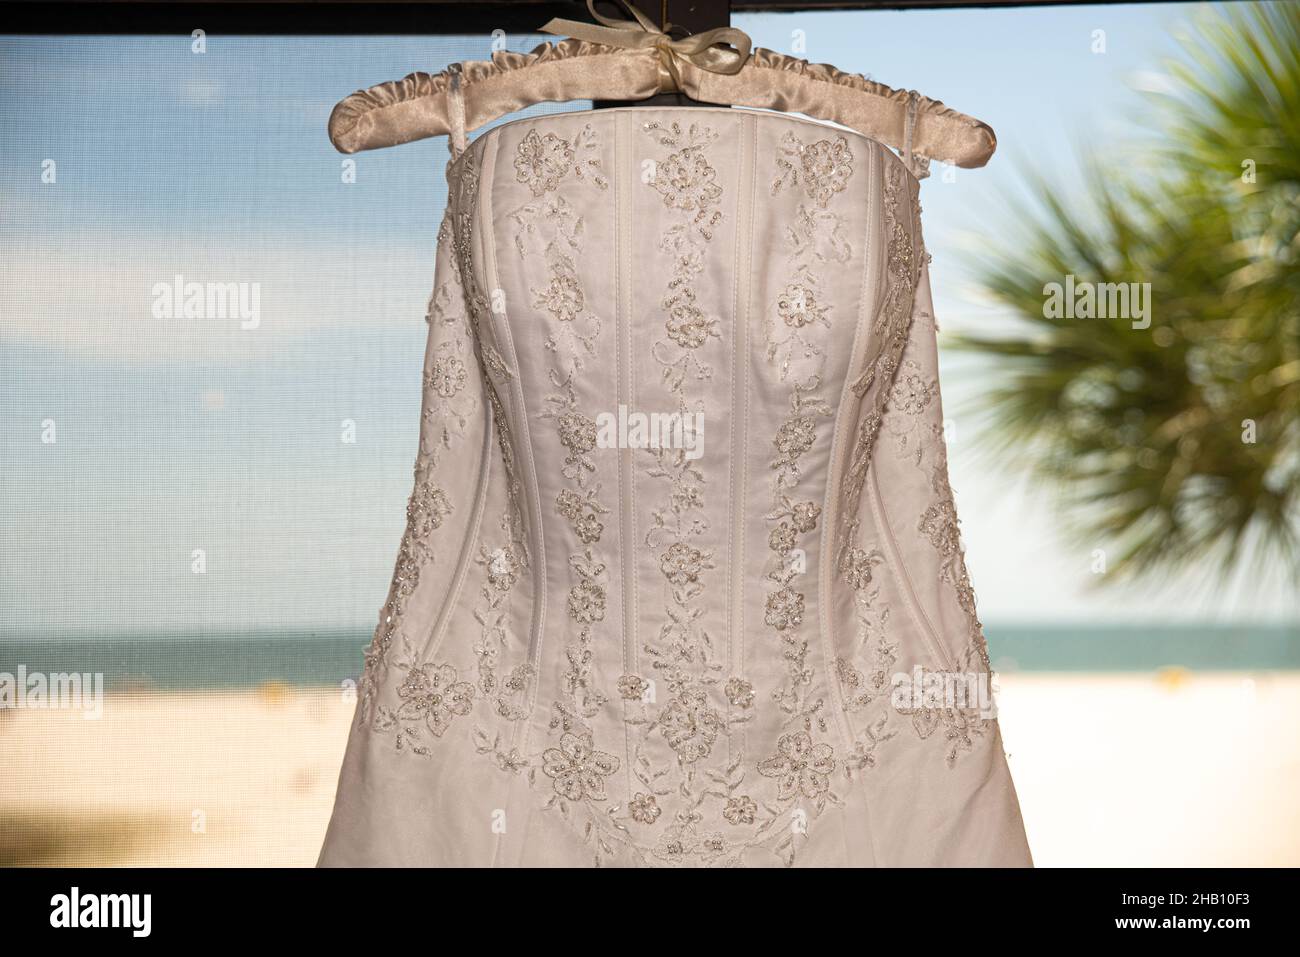 Weißes Hochzeitskleid auf Kleiderbügel hängen Stockfoto